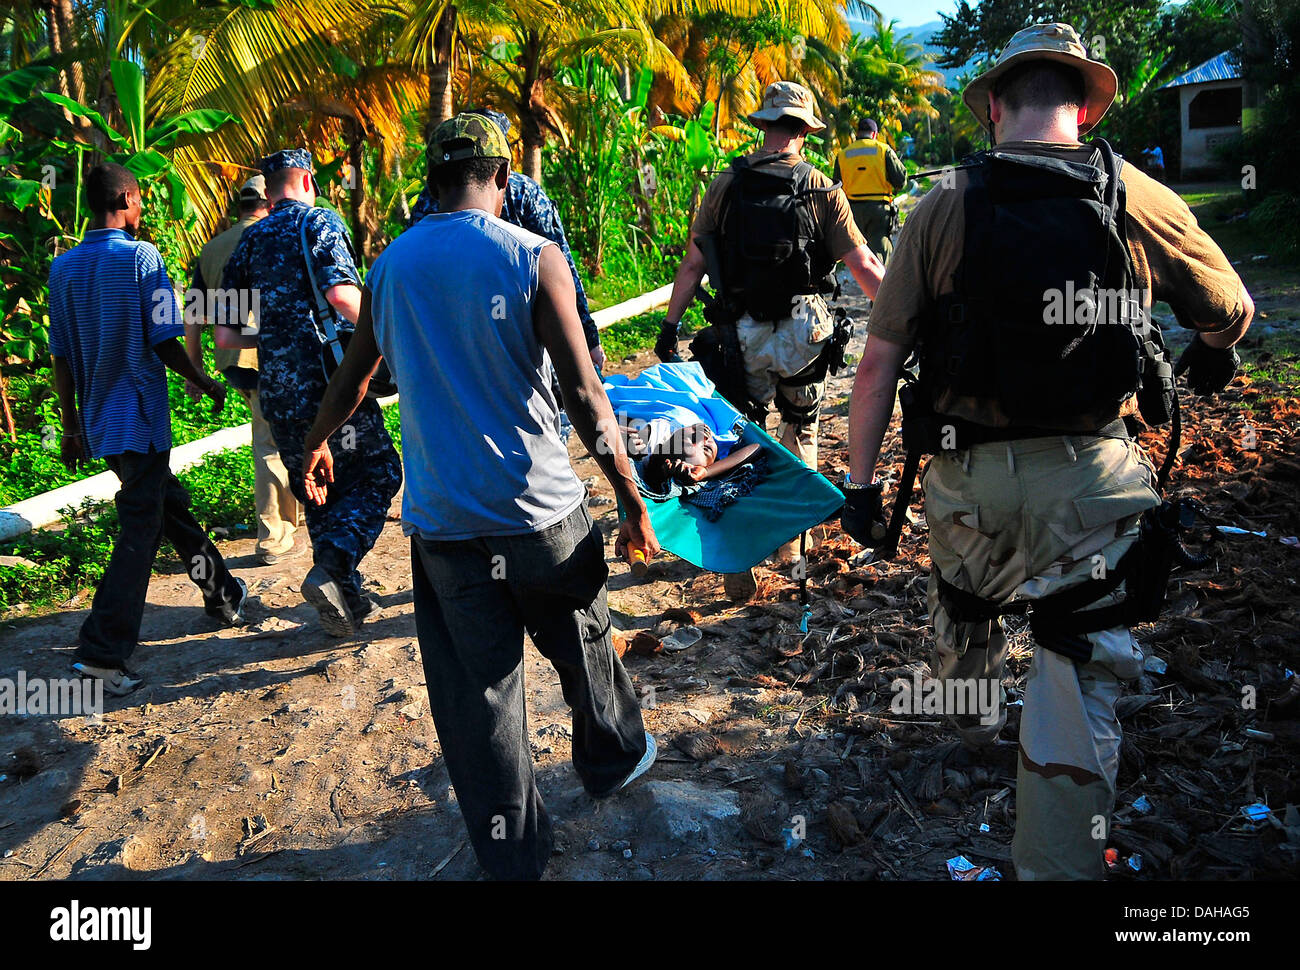 Les marins nous transporter un blessé jeune Haïtienne pour une évacuation médicale à la suite d'un violent séisme qui a tué 220 000 personnes, 22 janvier 2010 à Port-au-Prince, Haïti. Banque D'Images